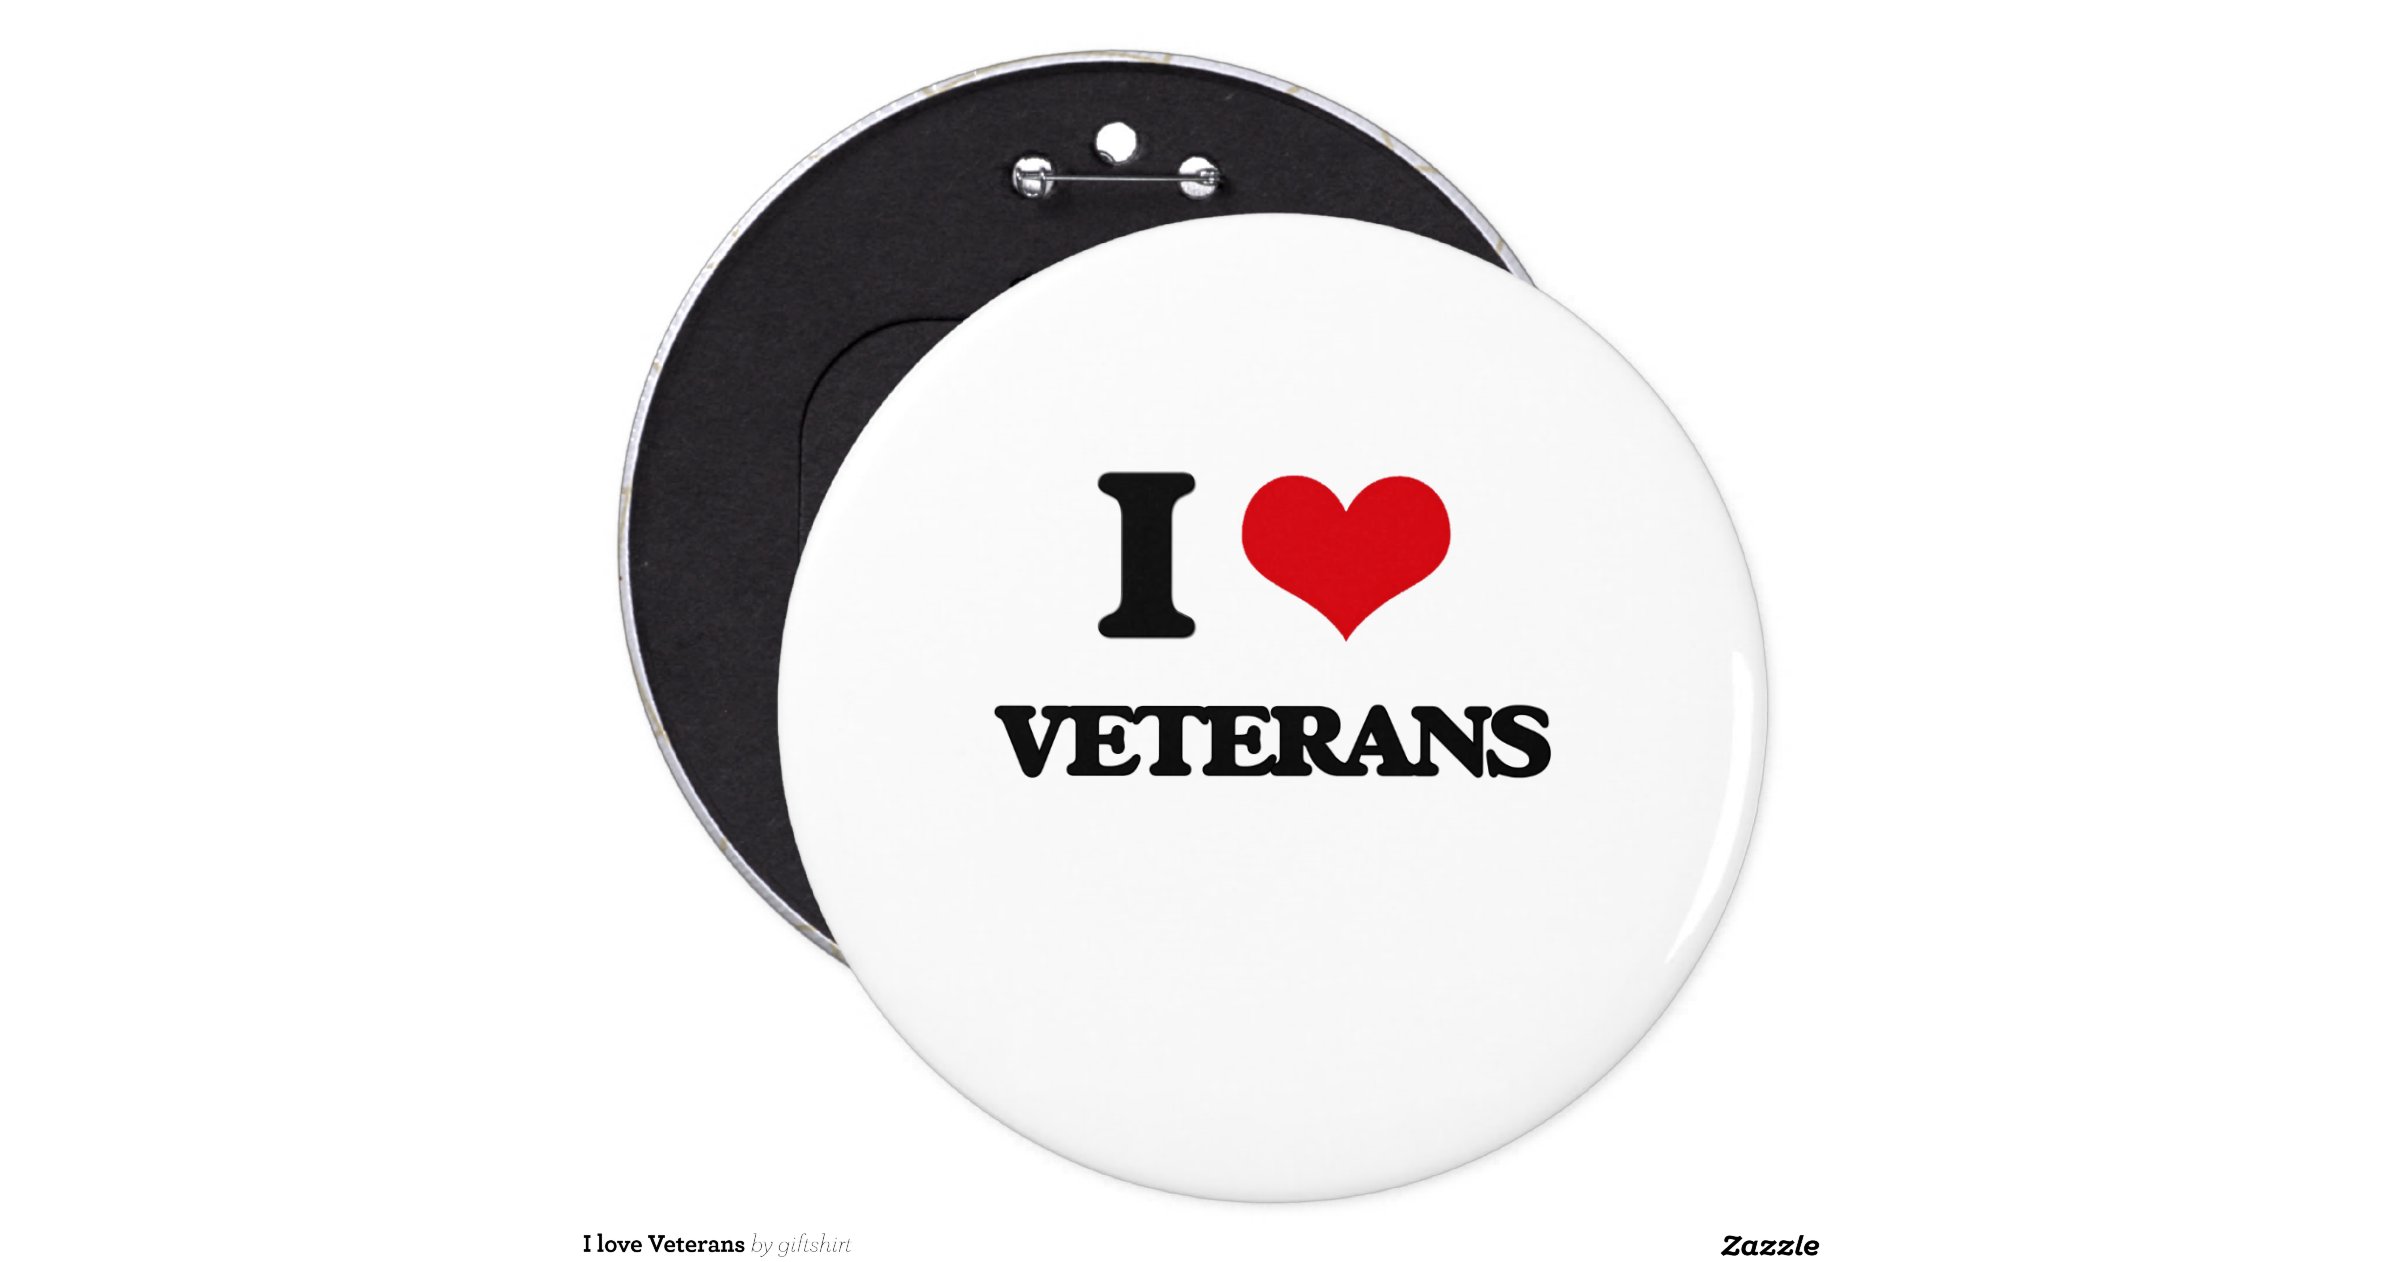 i_love_veterans_6_inch_round_button-r402